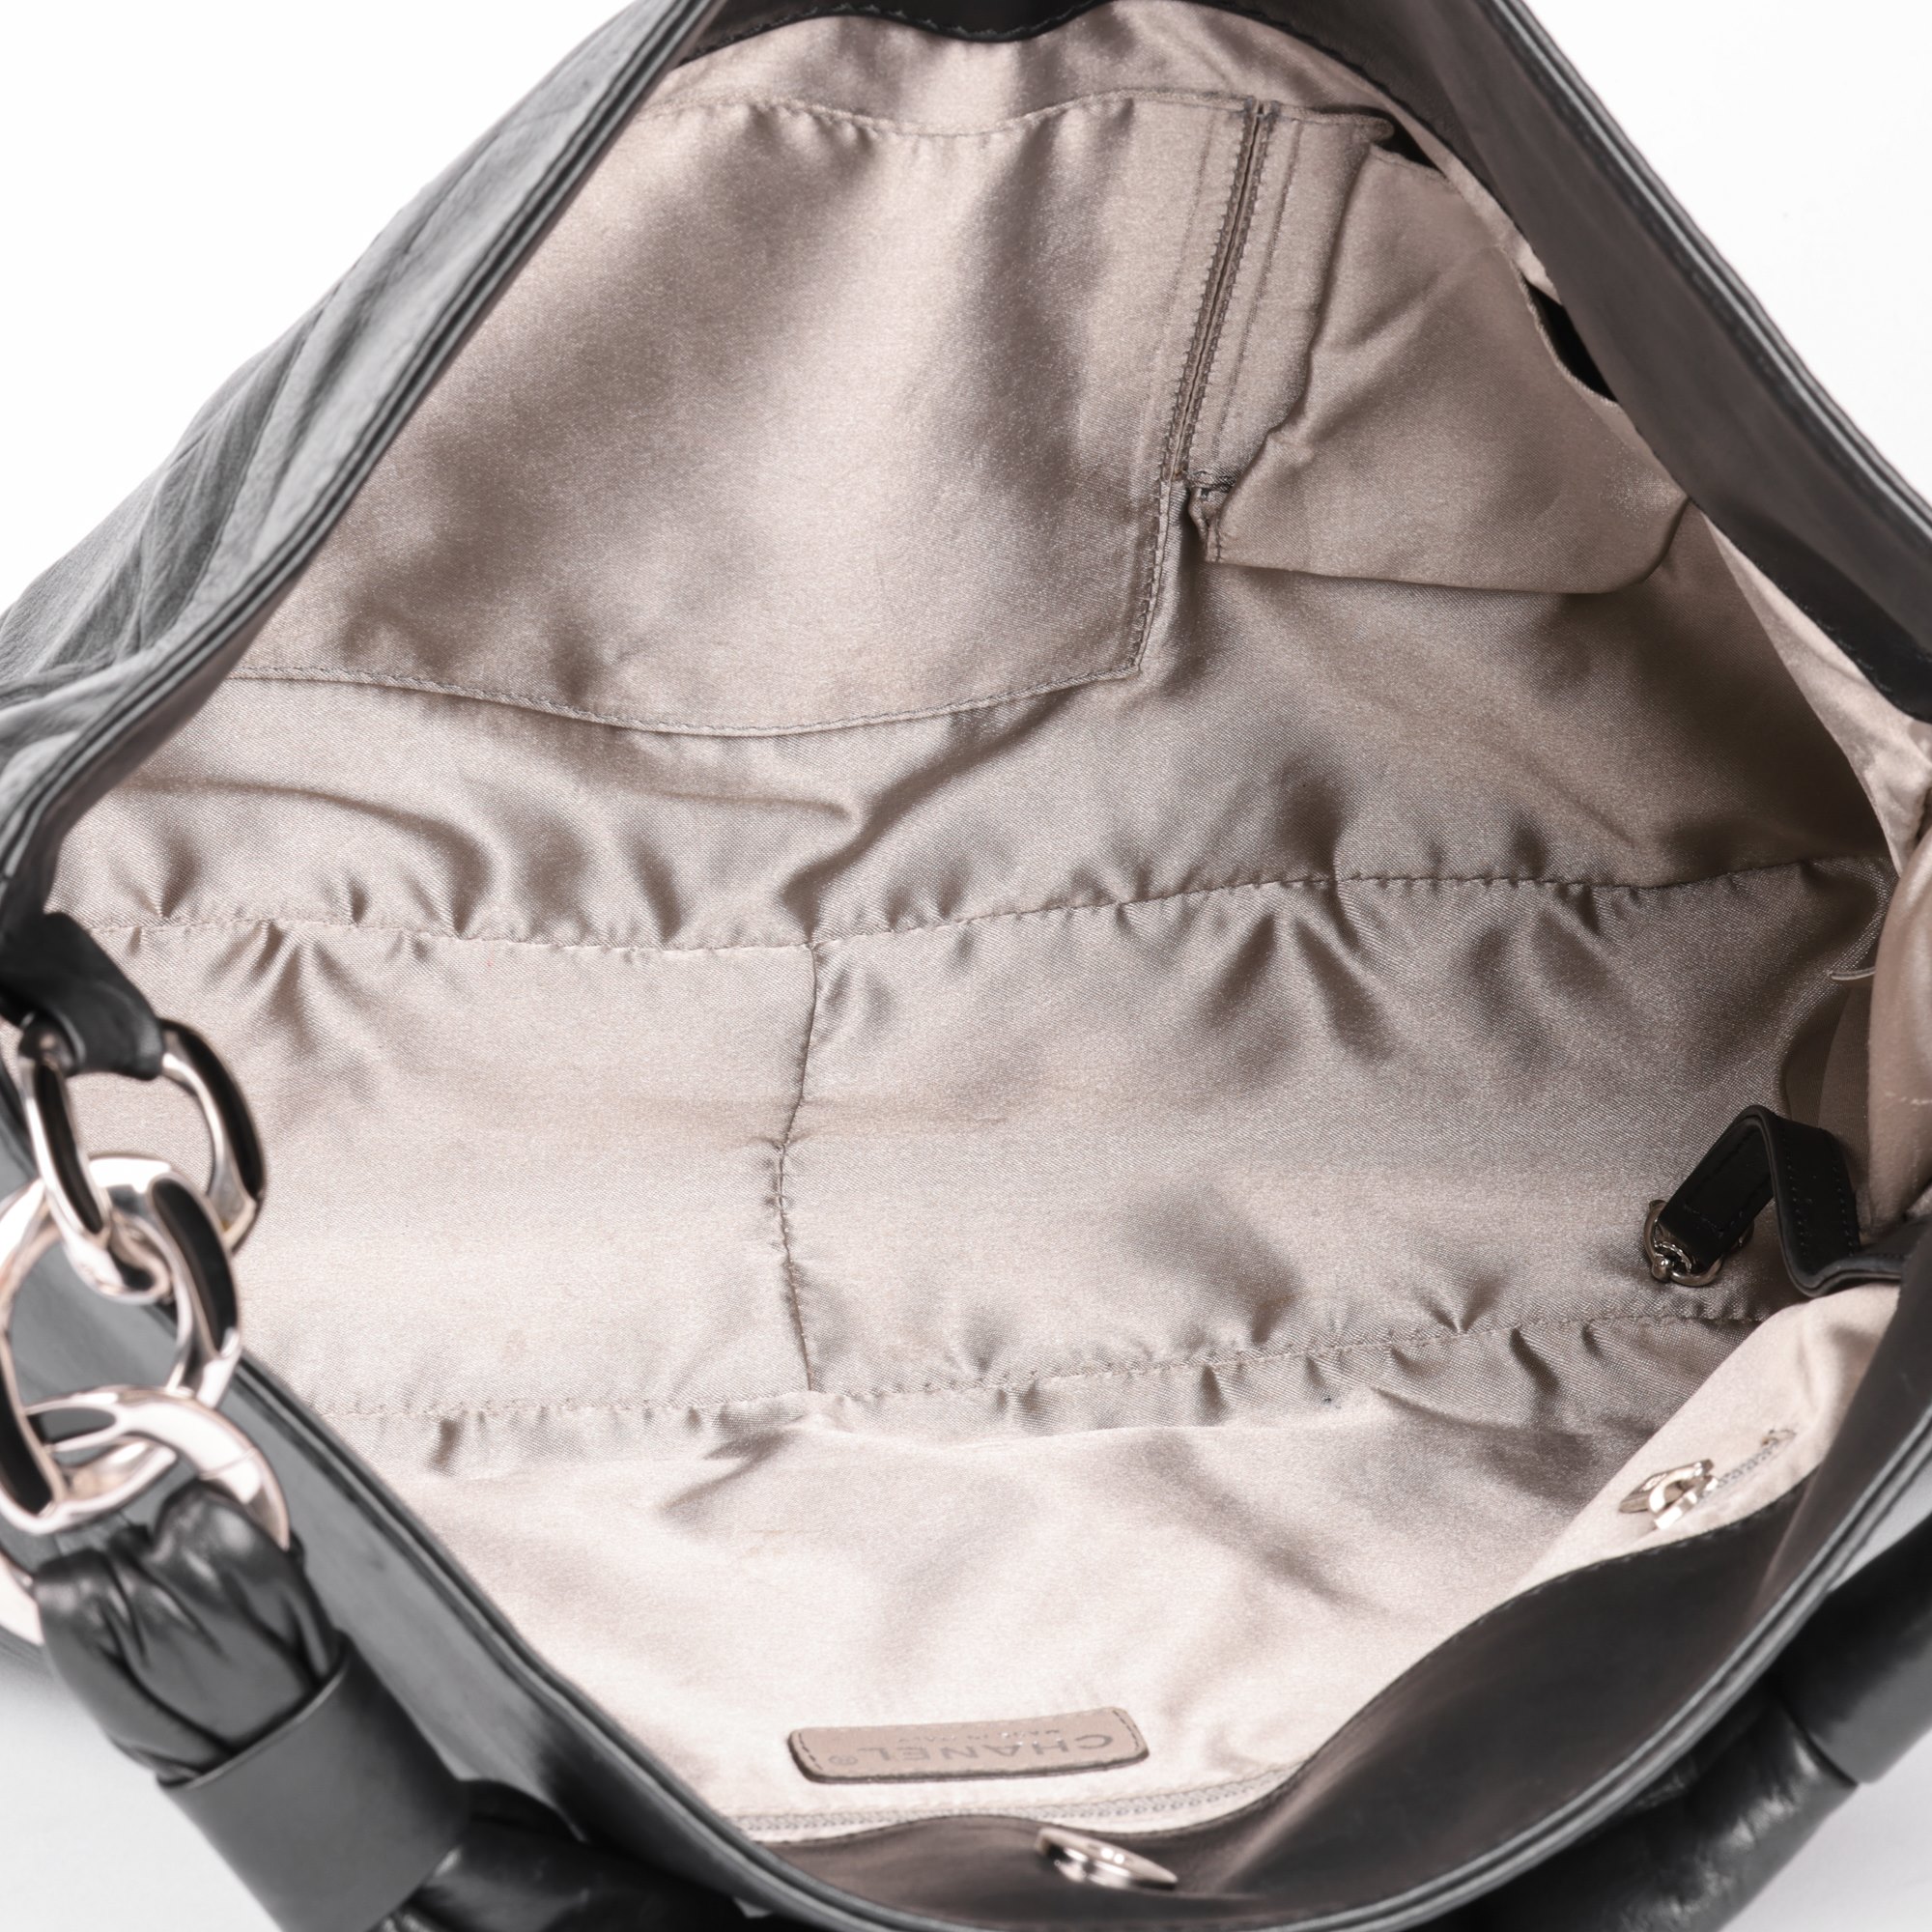 Chanel Black Quilted Lambskin Timeless Shoulder Bag